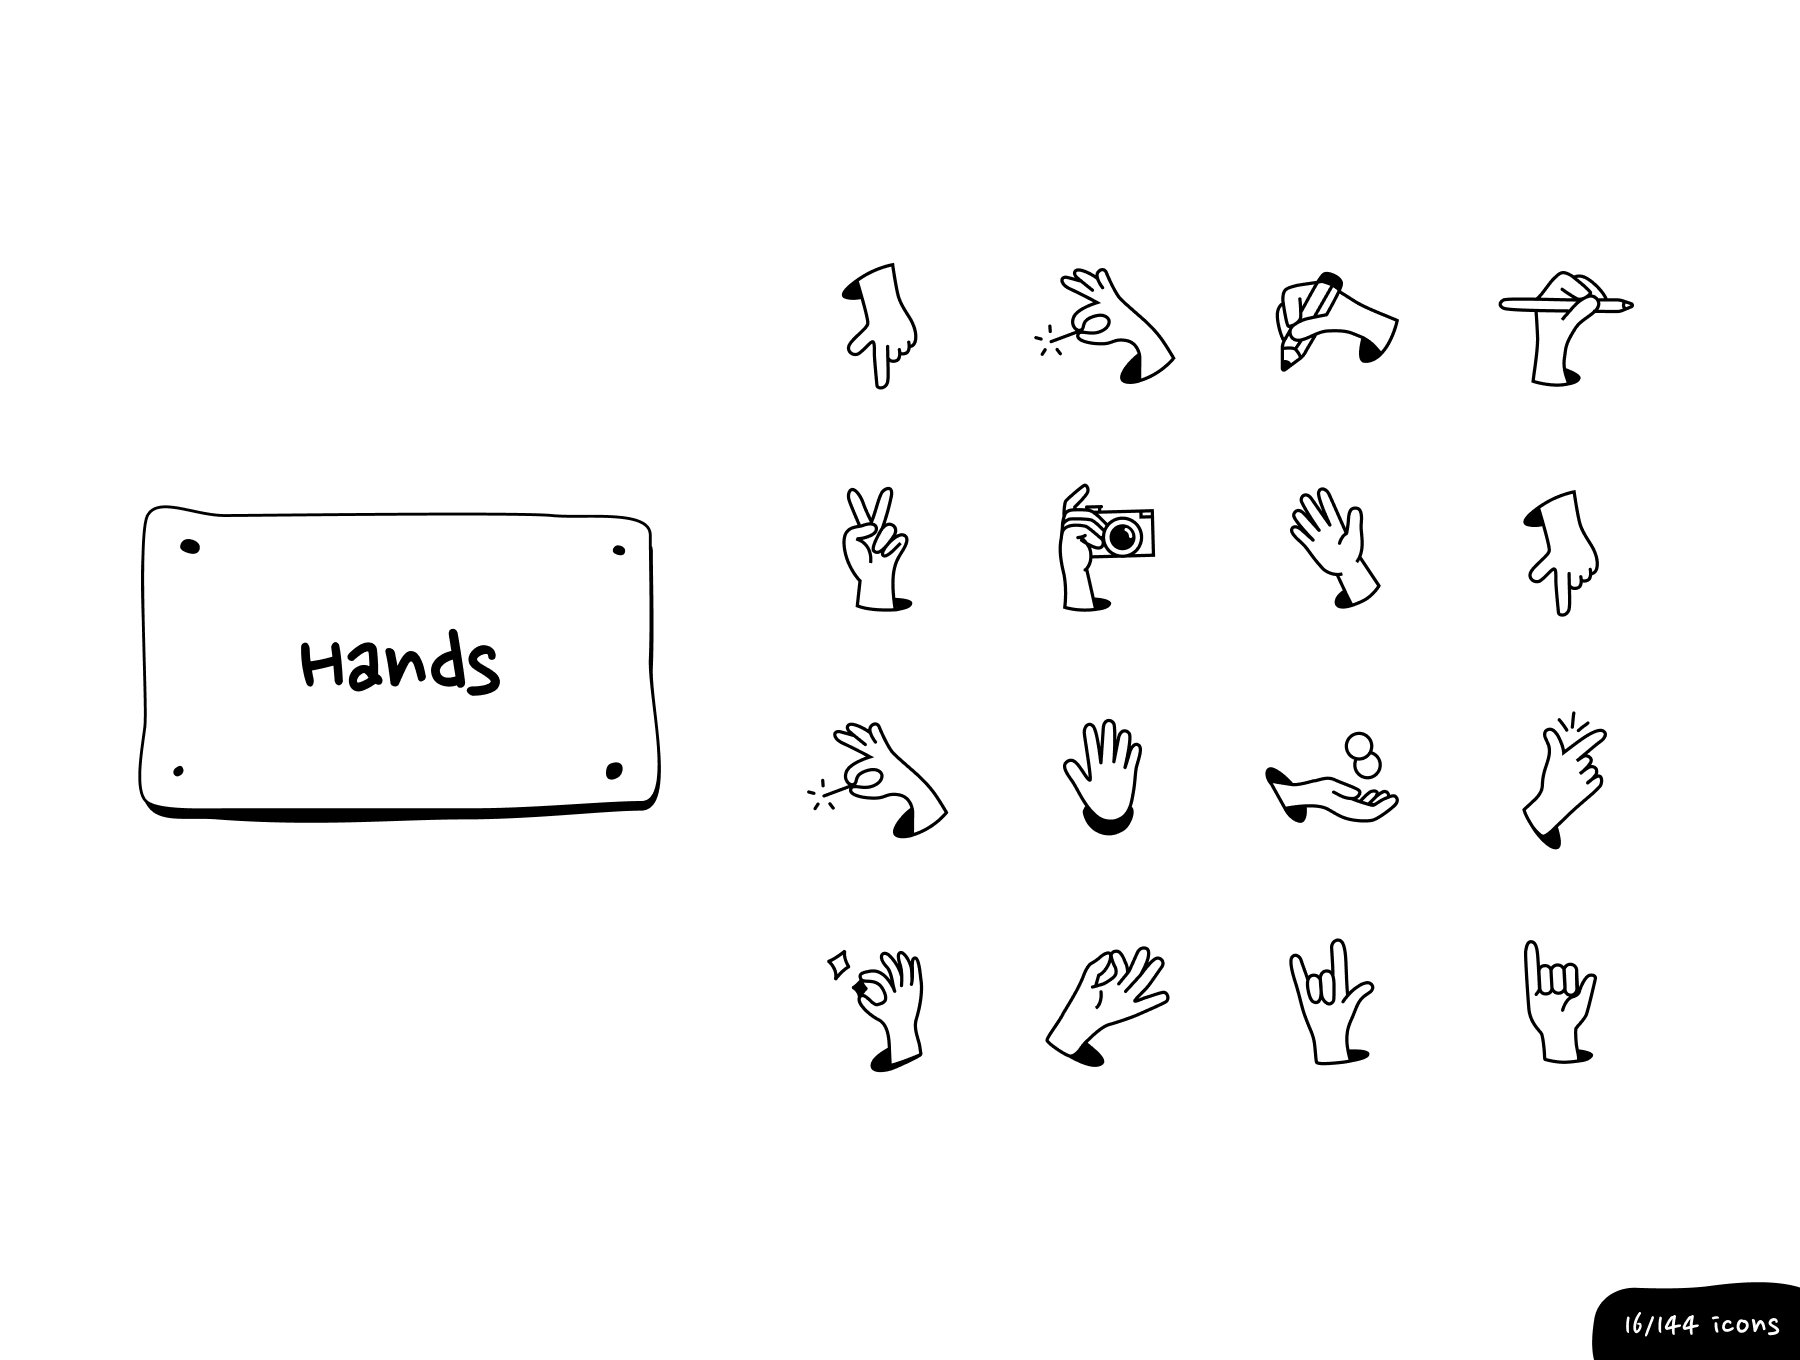 手部姿势图标套装 Hands - Inking Icon Set sketch, figma格式-插画-到位啦UI